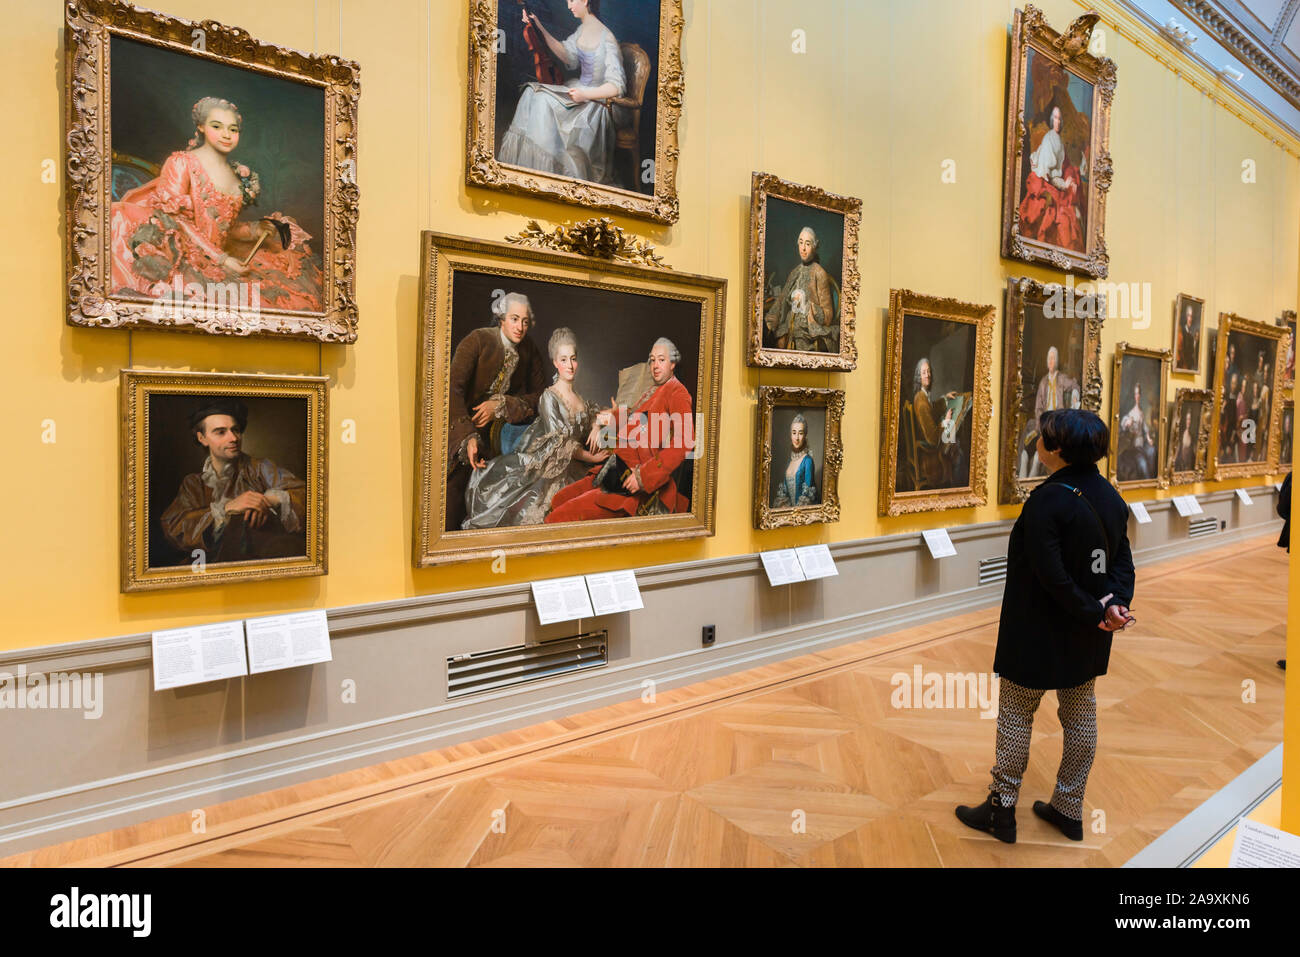 Nationalmuseum de Estocolmo, vista trasera de una mujer mirando los retratos de la nobleza del siglo XVIII en el interior del Museo Nacional de Arte, el centro de Estocolmo. Foto de stock